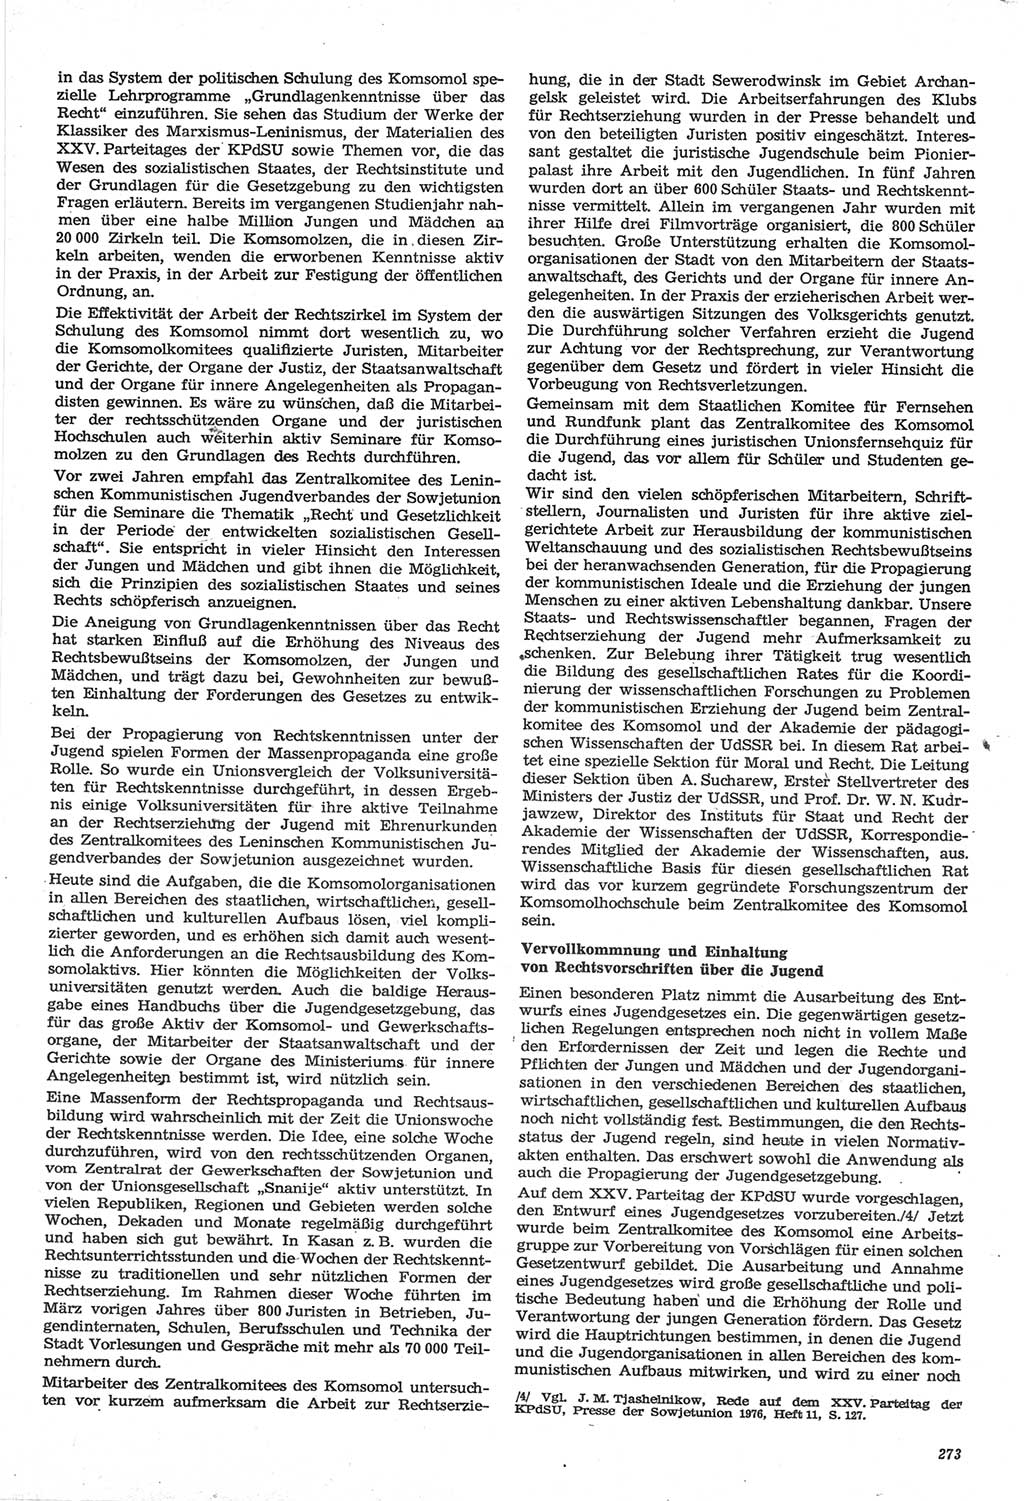 Neue Justiz (NJ), Zeitschrift für Recht und Rechtswissenschaft-Zeitschrift, sozialistisches Recht und Gesetzlichkeit, 31. Jahrgang 1977, Seite 273 (NJ DDR 1977, S. 273)